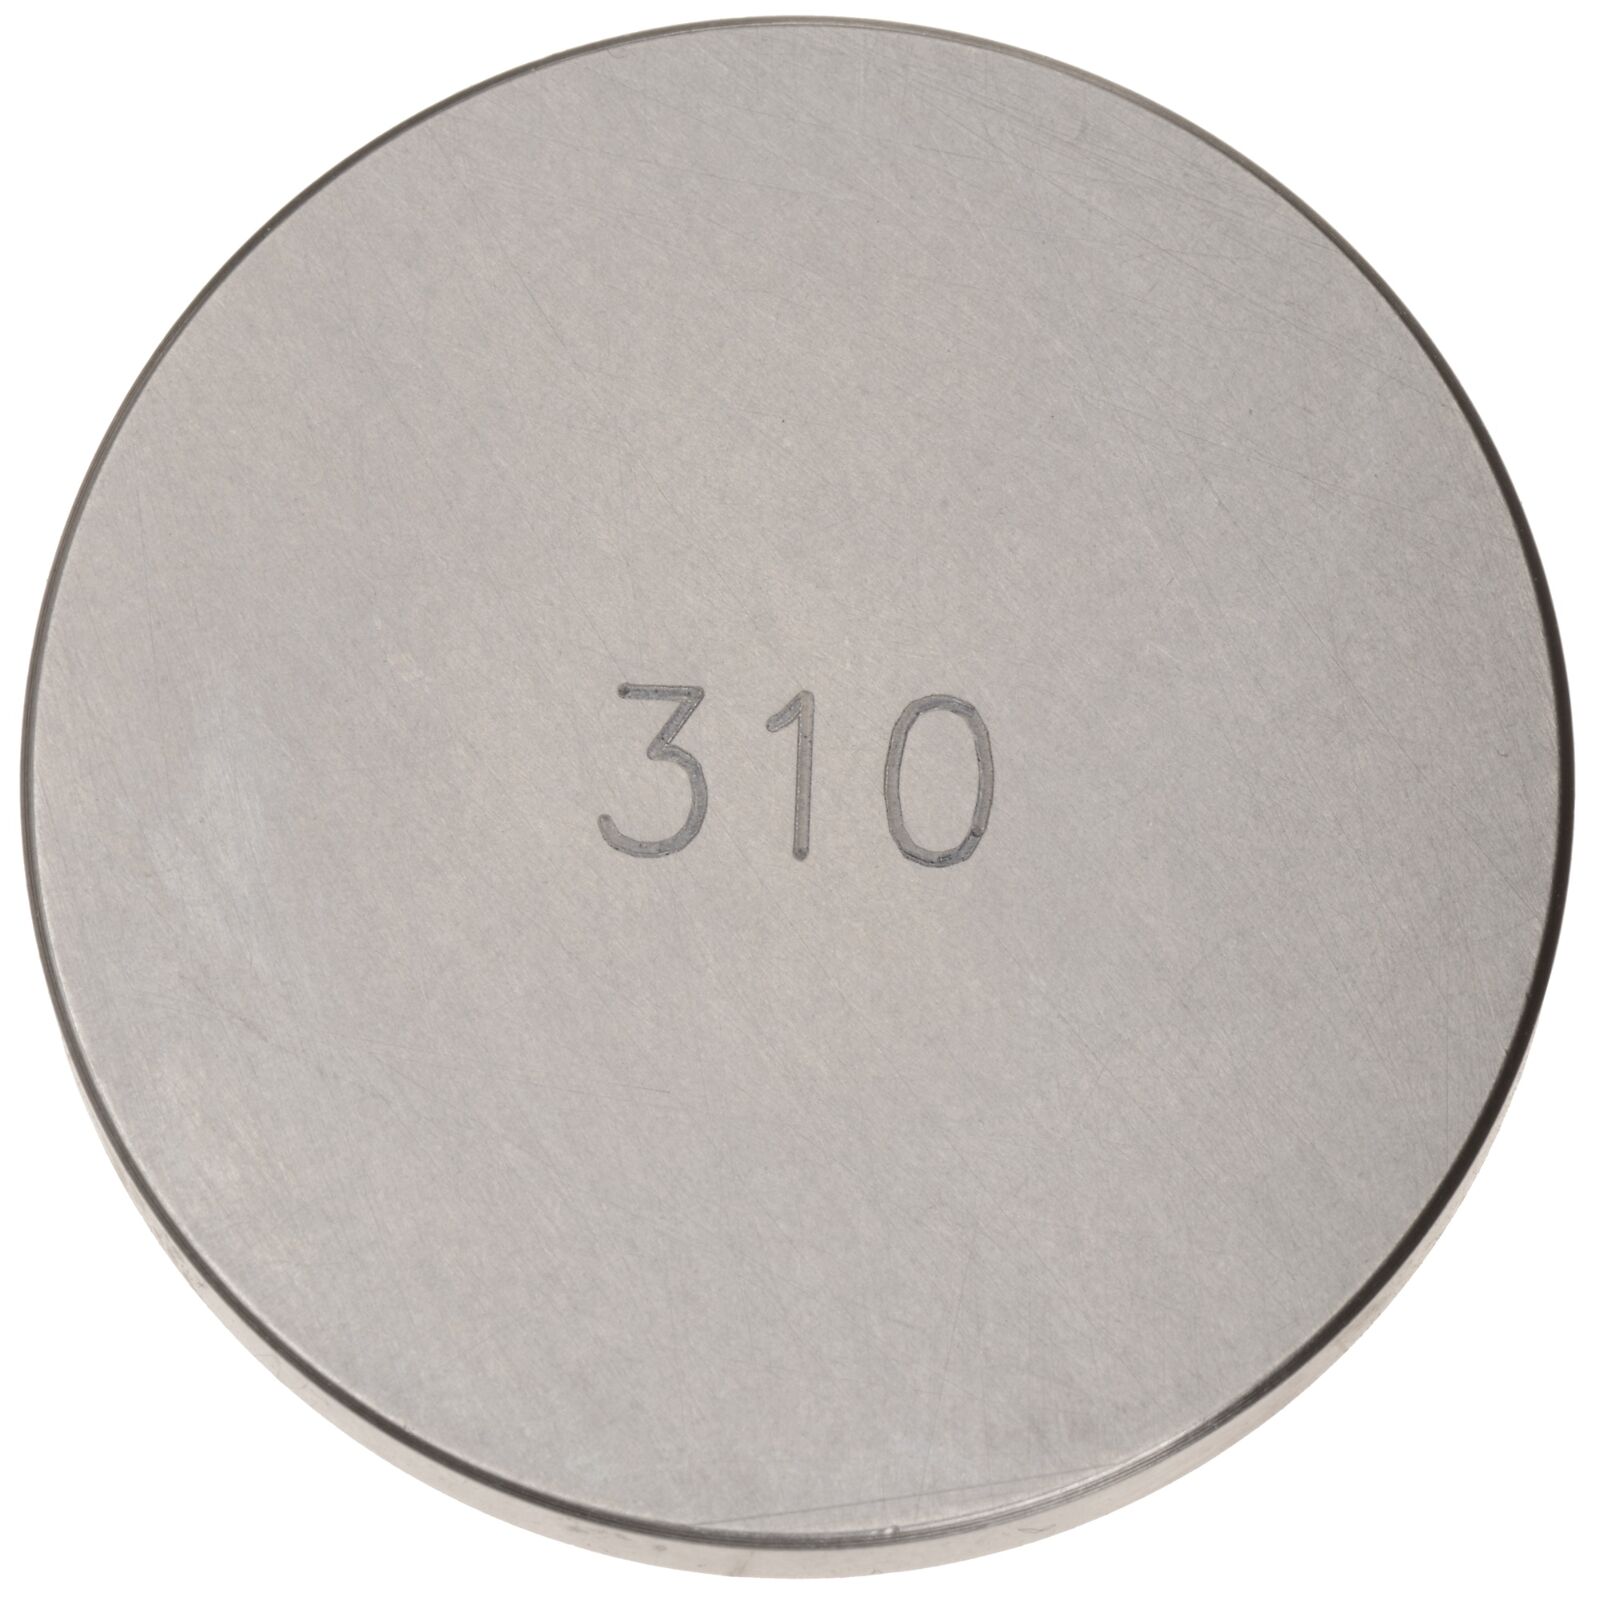 Obrázek produktu ventilová podložka (průměr 29 mm, tloušťka 3,10 mm), Tourmax V29-310T